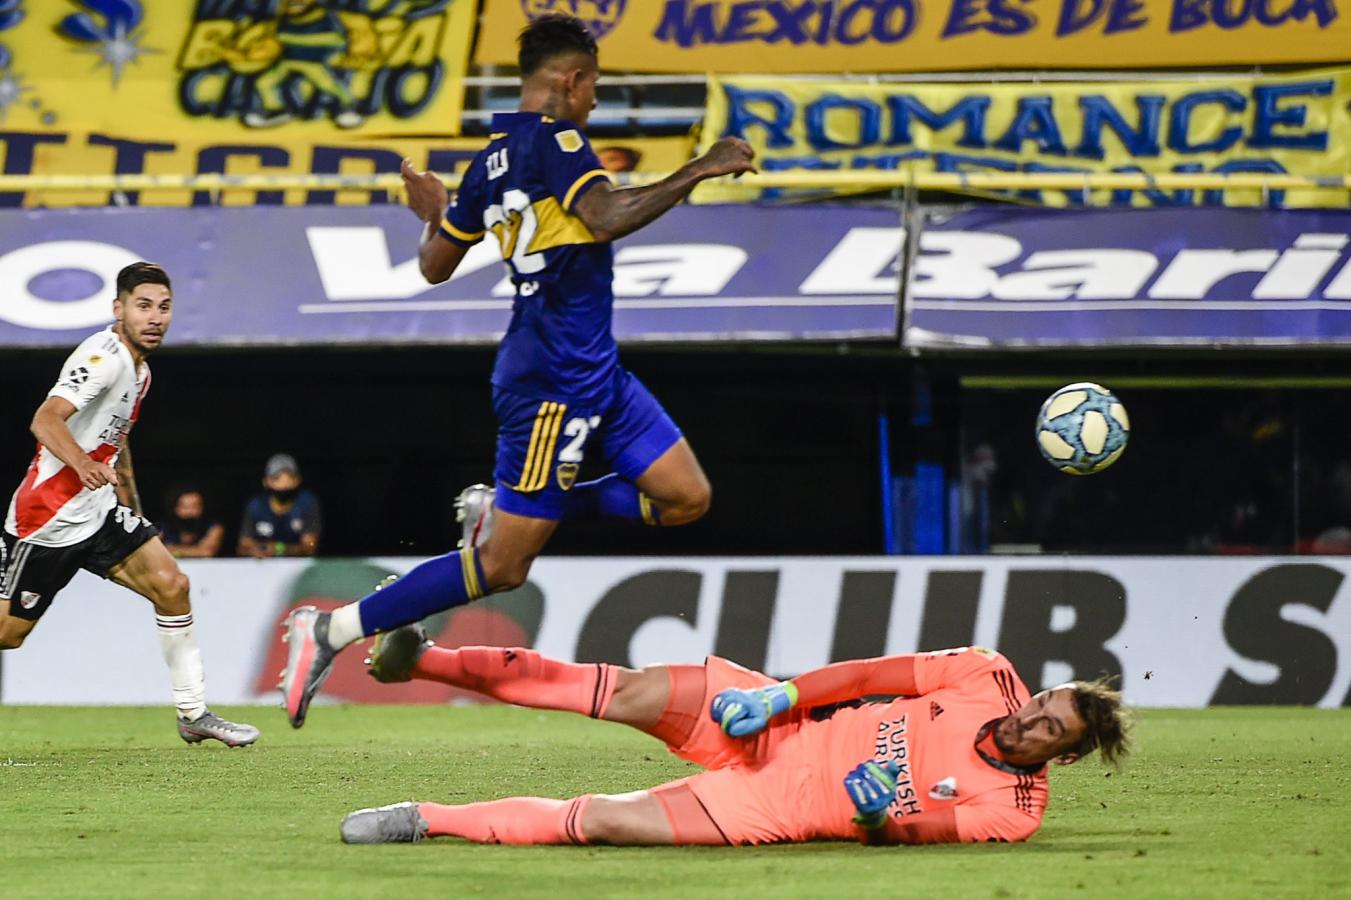 Imagen Villa define de manera magistral ante la salida desesperada de Armani. Fue un empate vital para Boca, a cinco para el final.